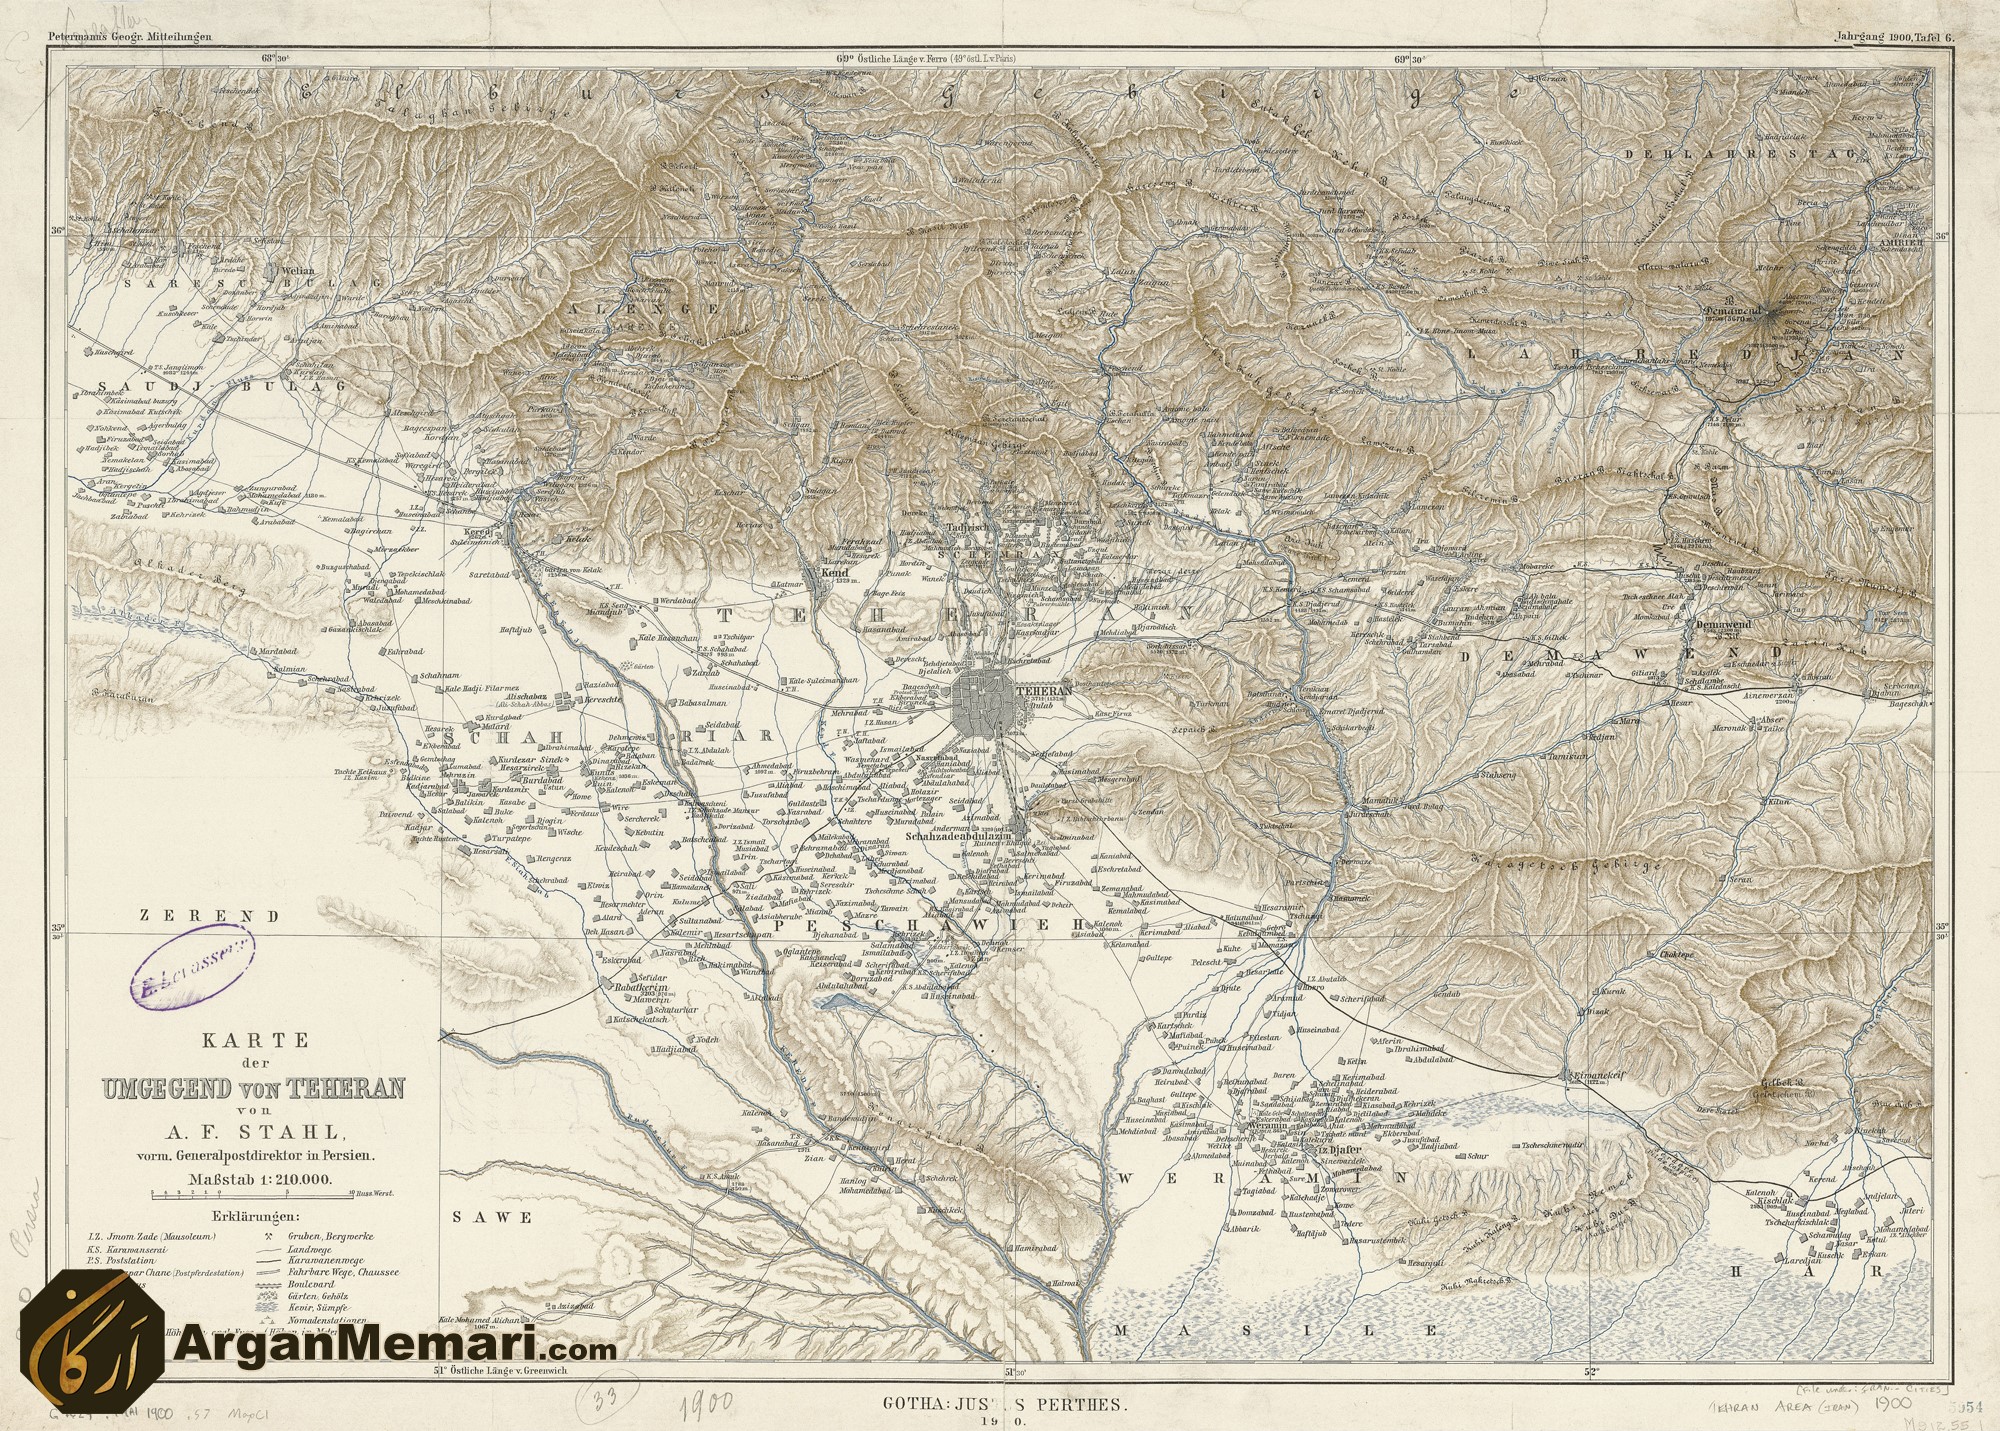 نقشه هایی از دوره ی قاجاره شهر طهران